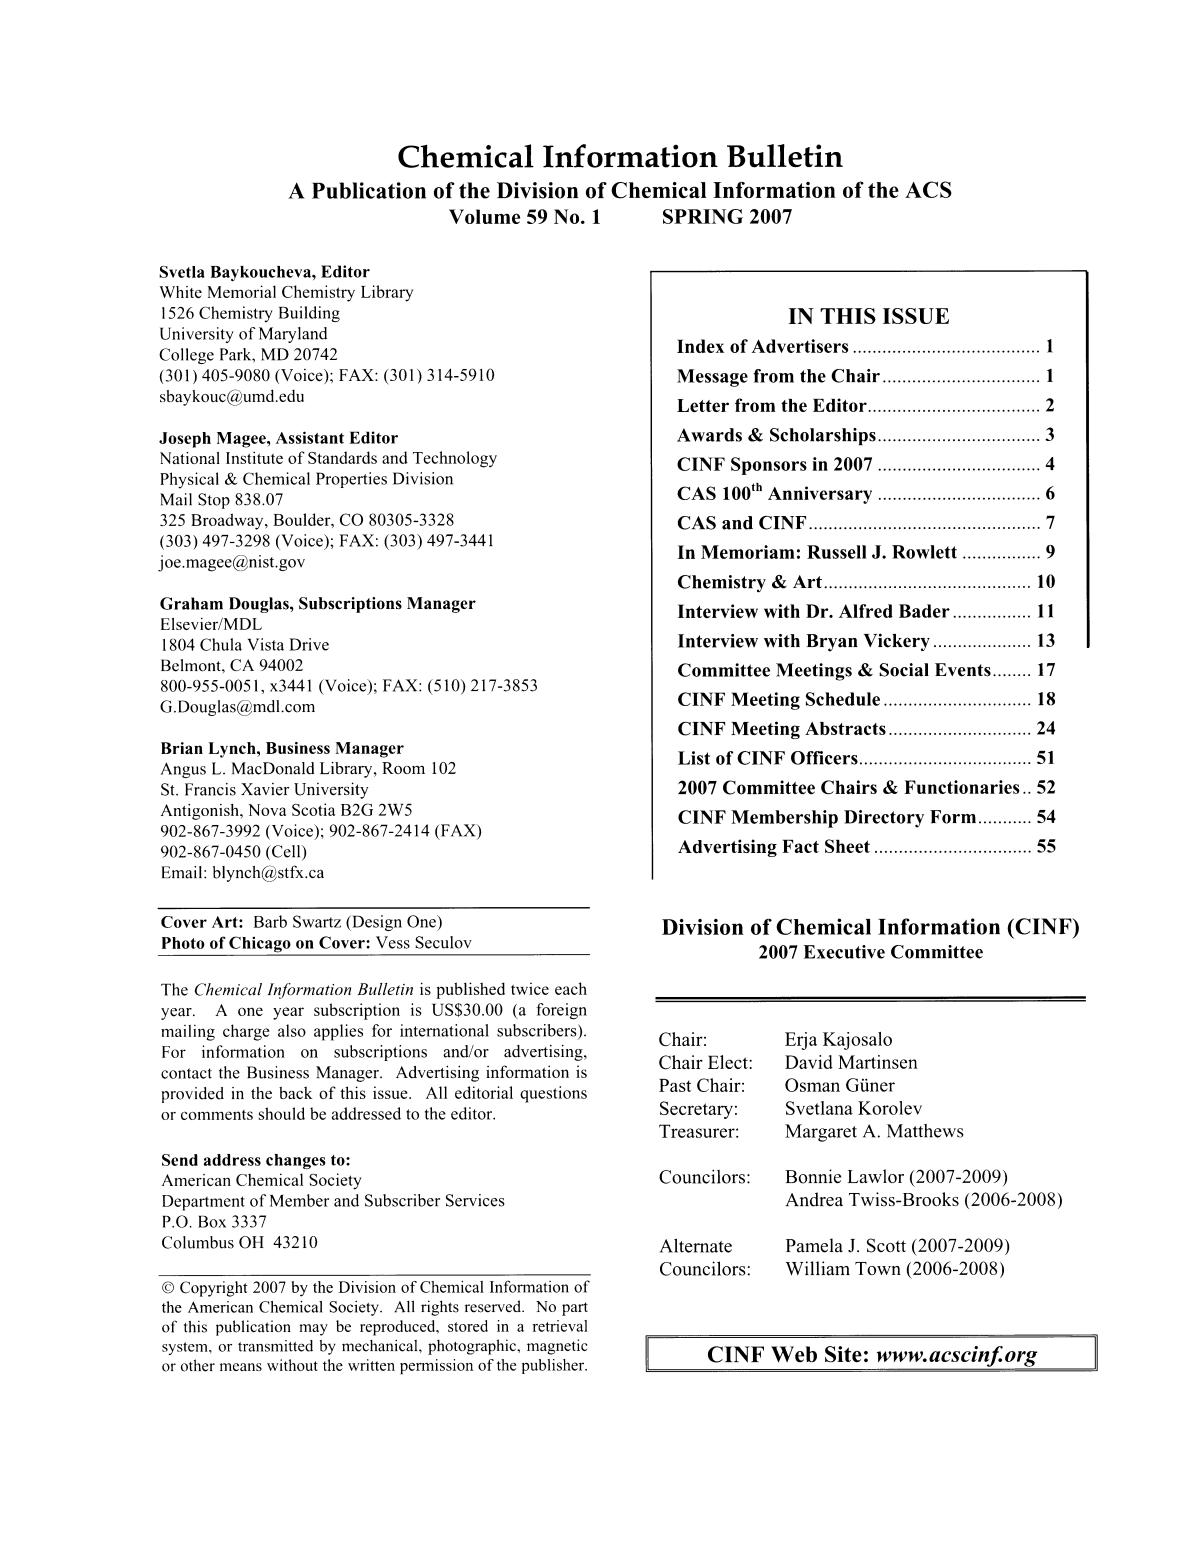 Chemical Information Bulletin, Volume 59, Number 1, Spring 2007
                                                
                                                    Front Inside
                                                